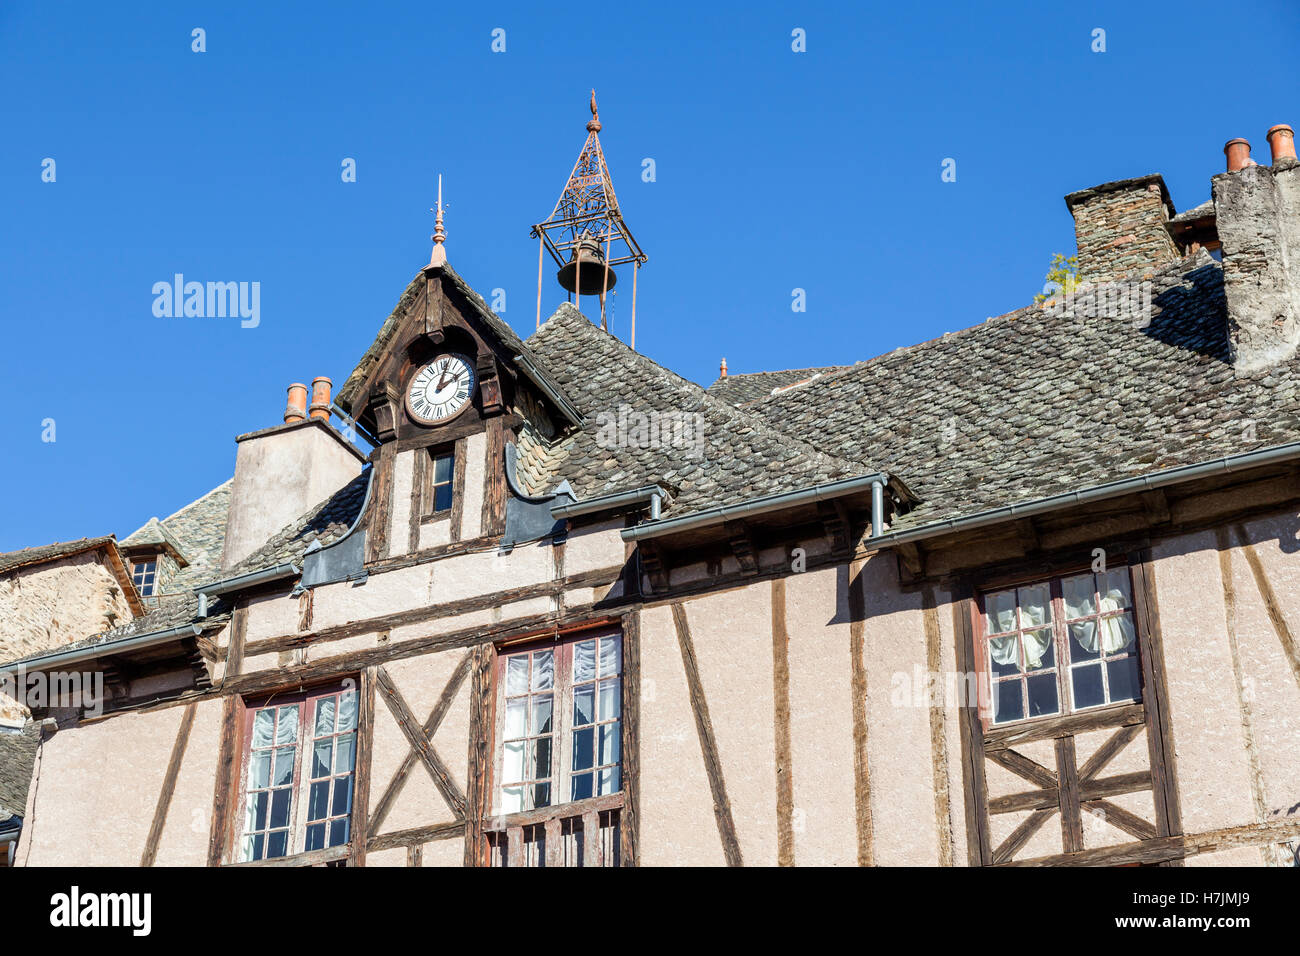 Le petit village médiéval de Conques (Aveyron - France). Il montre aux visiteurs ses anciennes maisons à colombages avec leurs toits de lauzes. Banque D'Images